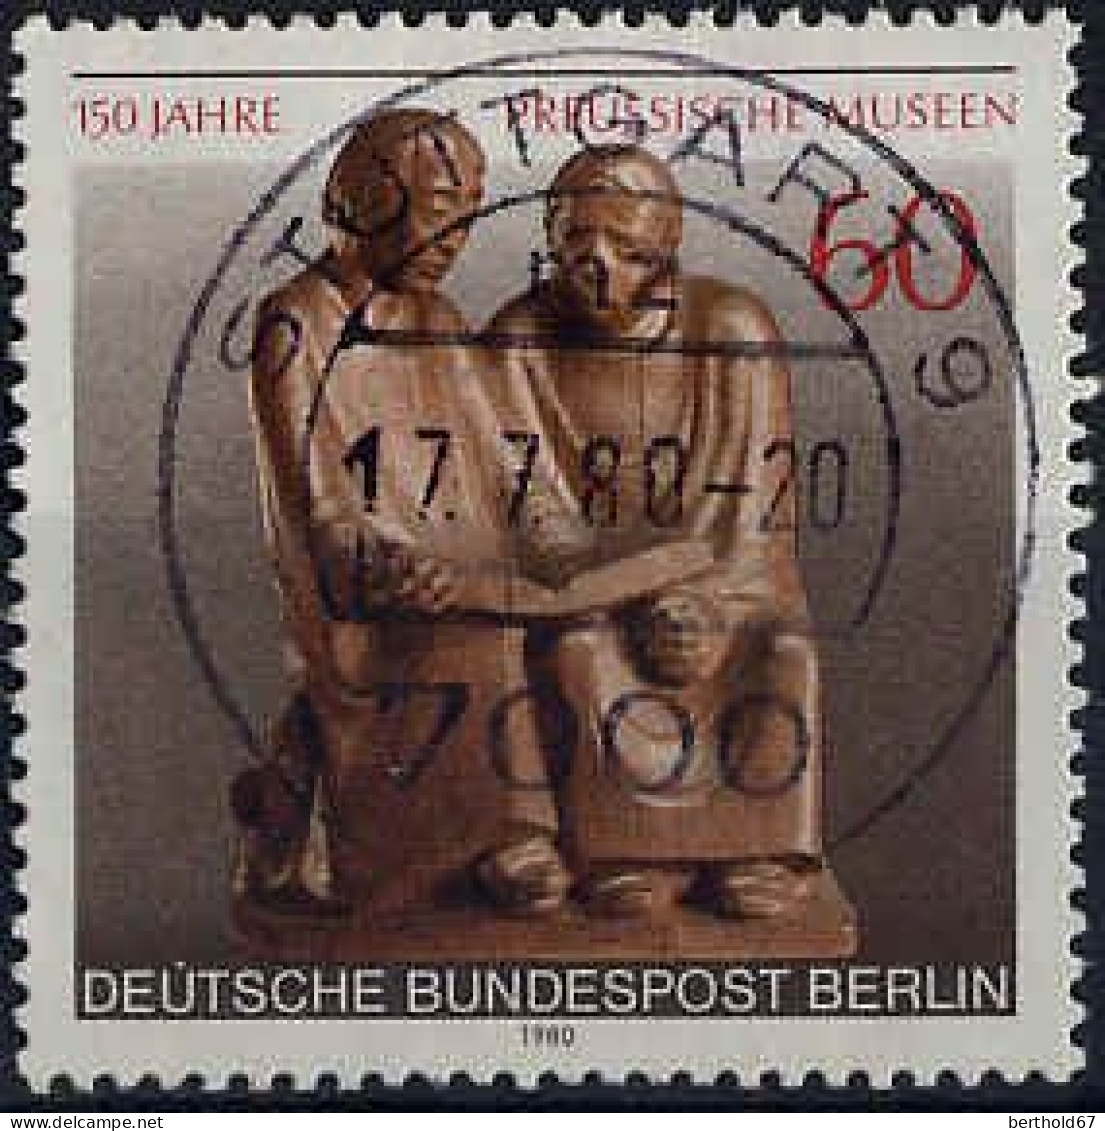 Berlin Poste Obl Yv:587 Mi:626 Ernst Barlach Sculture 17-7-80 (TB Cachet à Date) - Usati